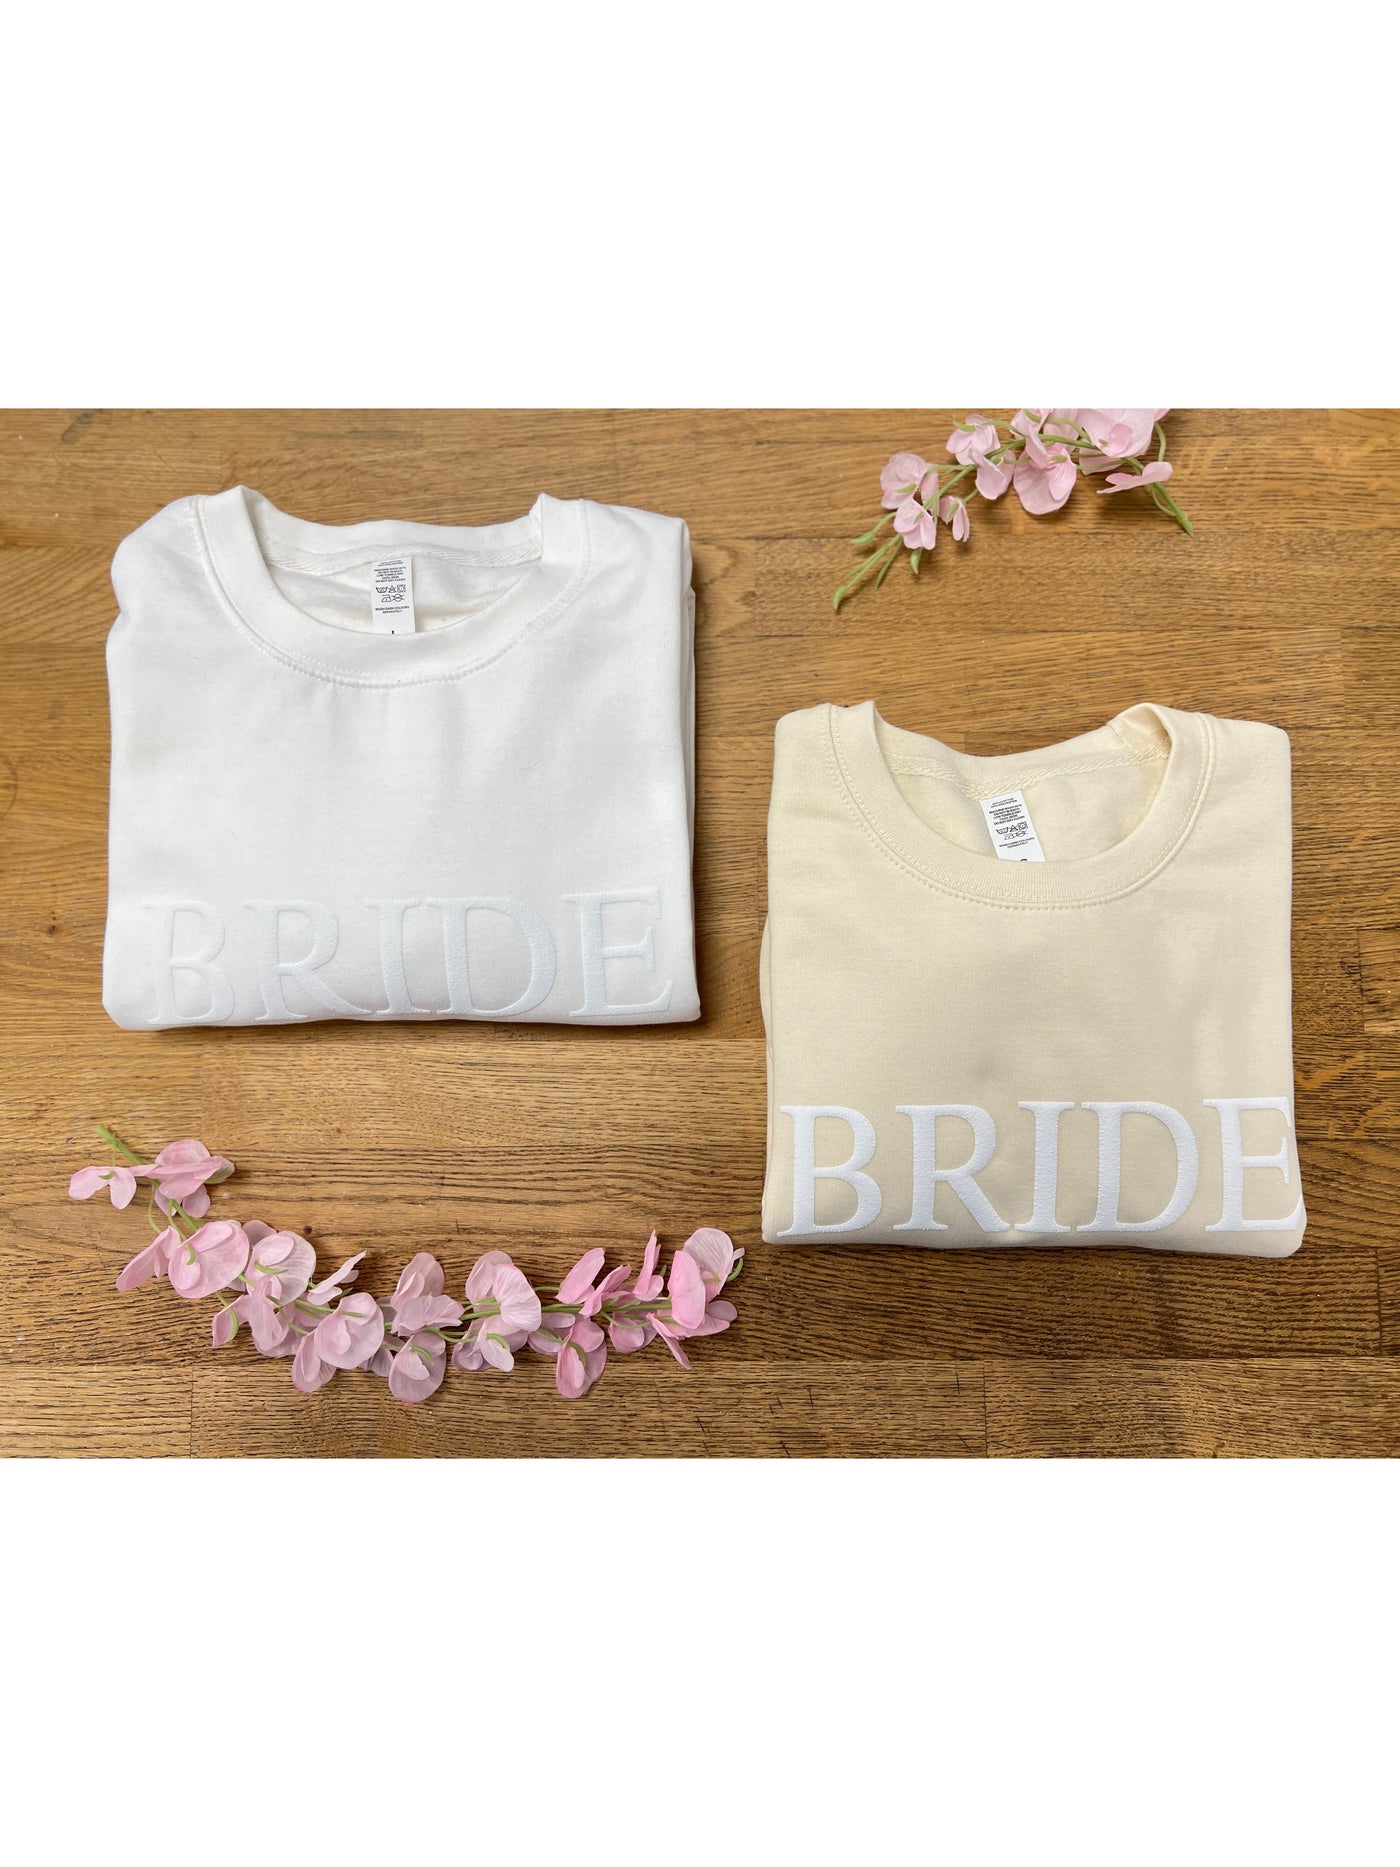 BRIDE embossed sweatshirt